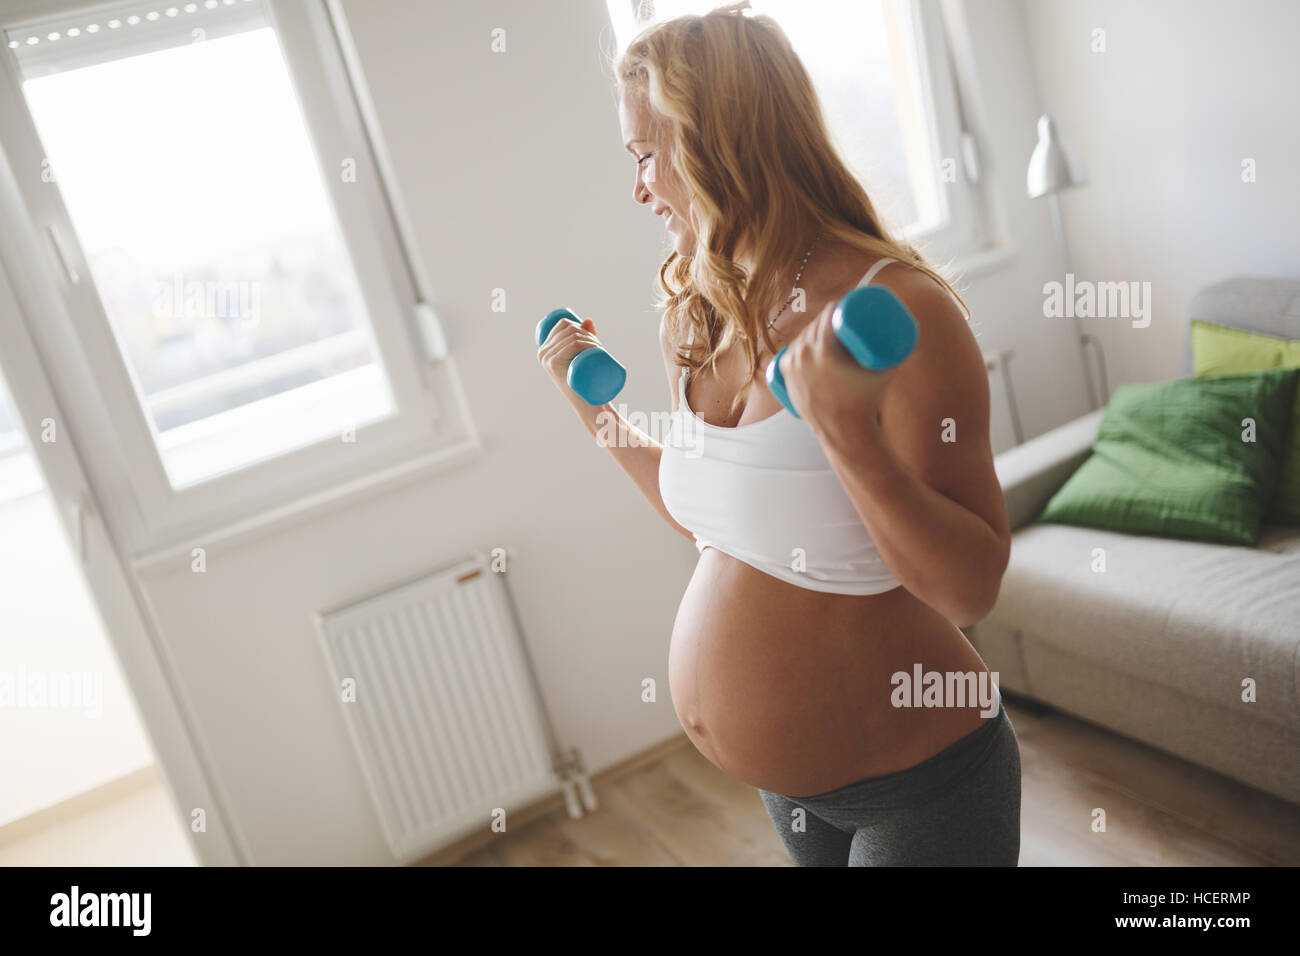 Femme enceinte avec haltères d'entraînement pour rester actif Banque D'Images